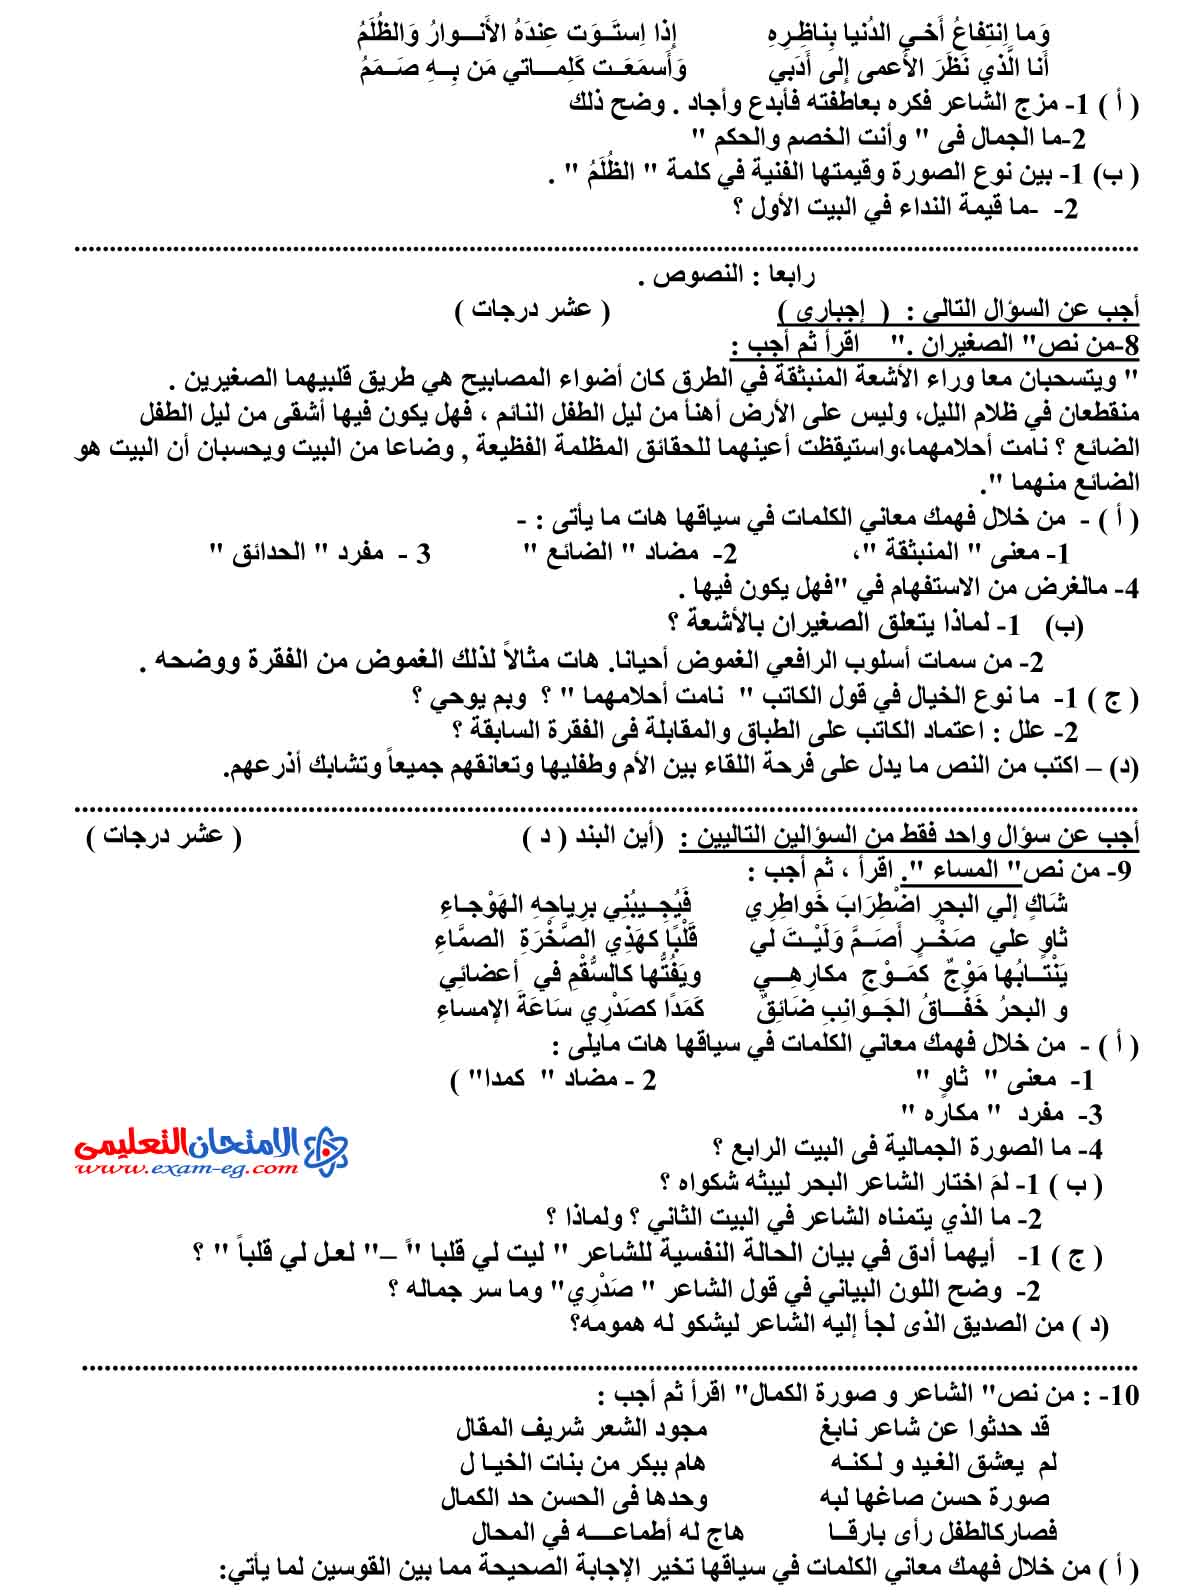 امتحان اللغة العربية 1 - مدرسة اون لاين (3)